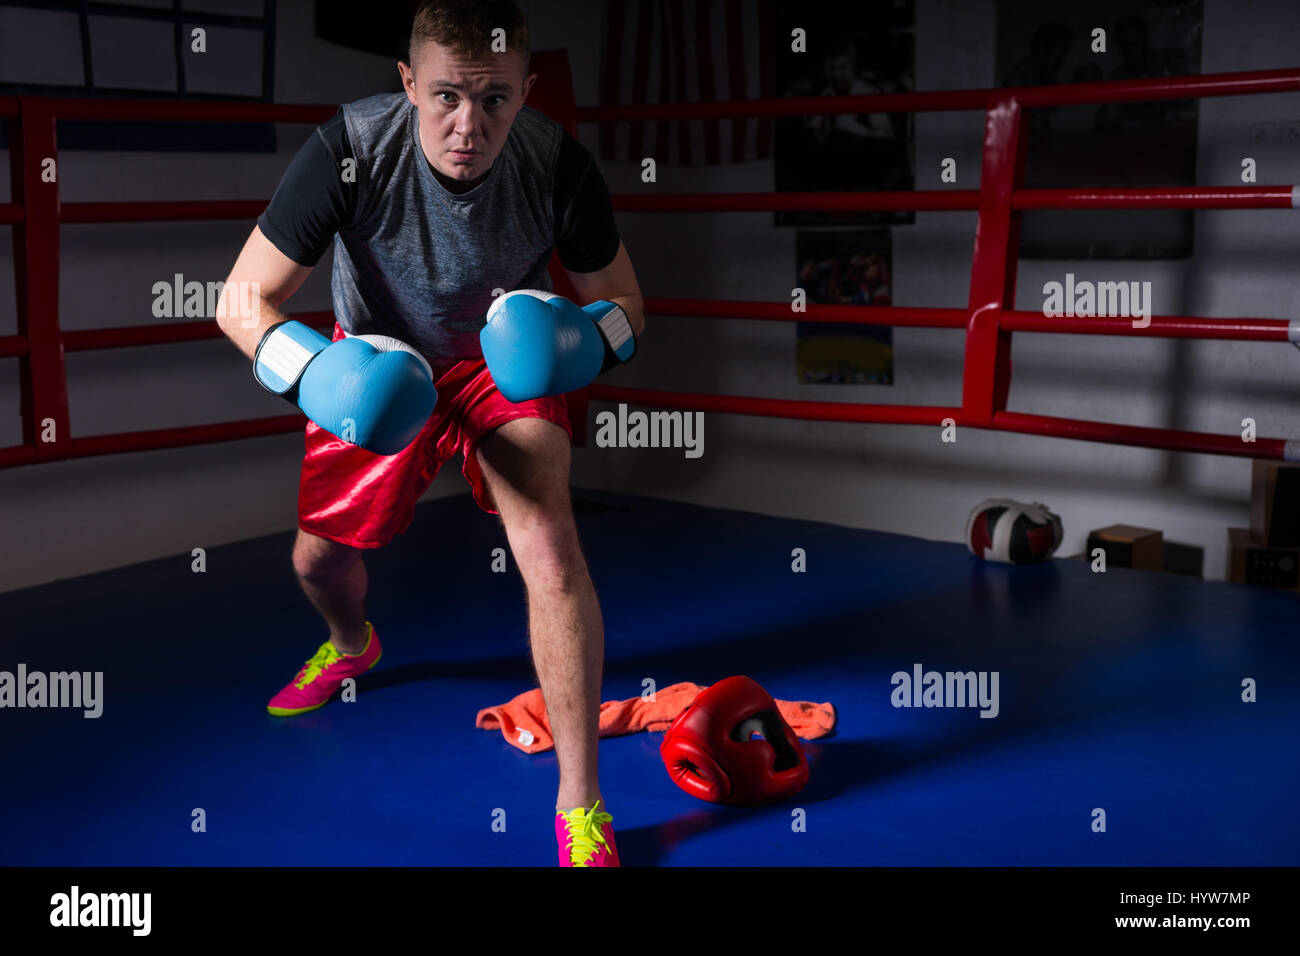 Sporty male boxer dans des gants de boxe se lève et se prépare pour la bataille dans les ring de boxe dans une salle de sport Banque D'Images